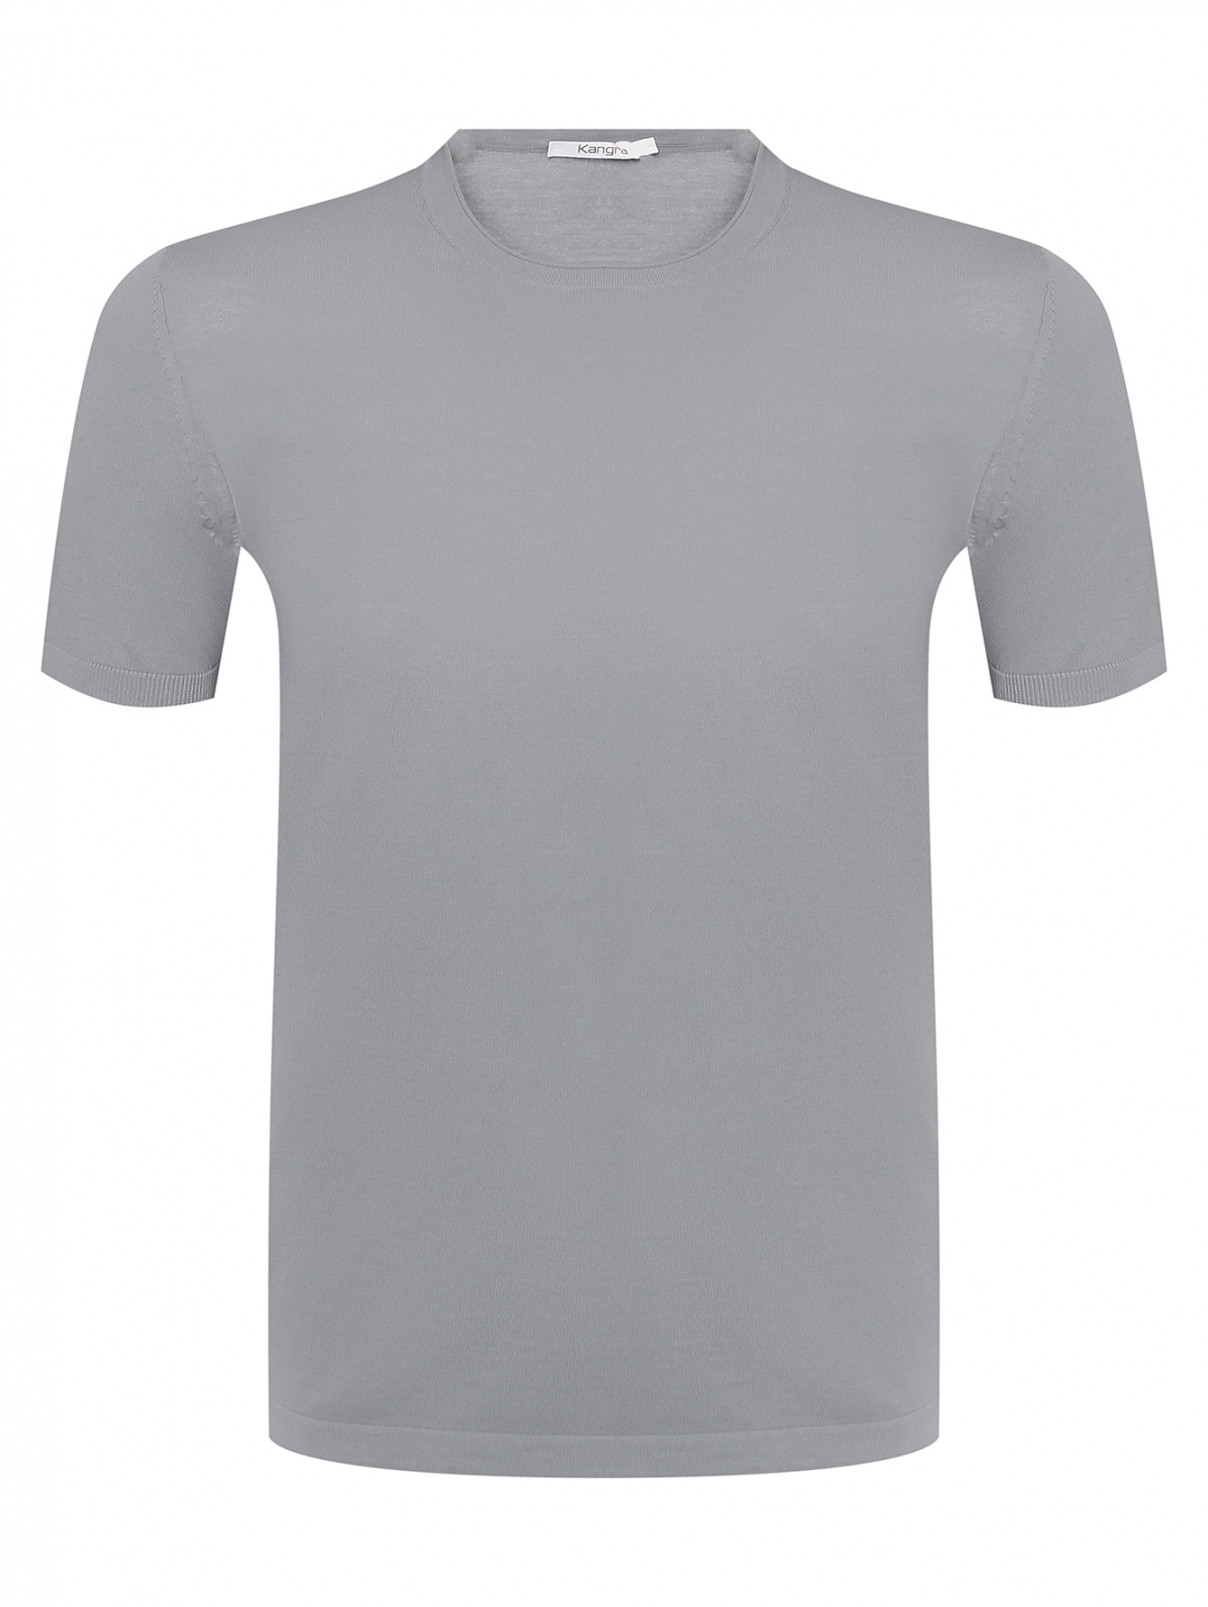 Однотонная футболка из хлопка Kangra Cashmere  –  Общий вид  – Цвет:  Серый